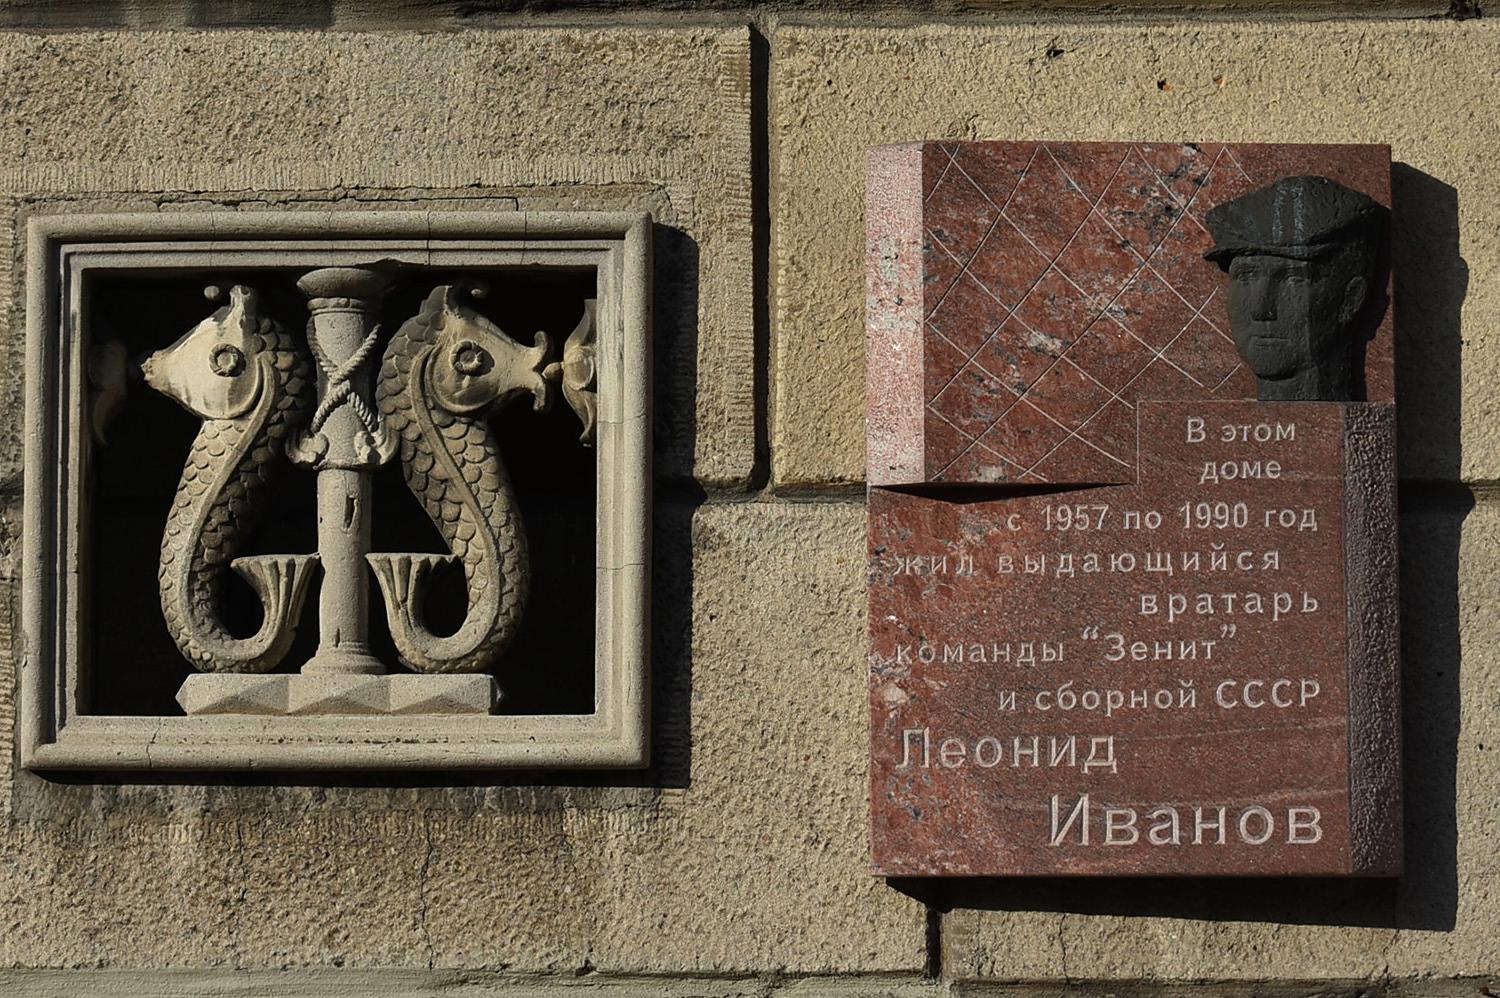 Saint Petersburg, Кузнецовская улица, 46. Saint Petersburg — Memorial plaques